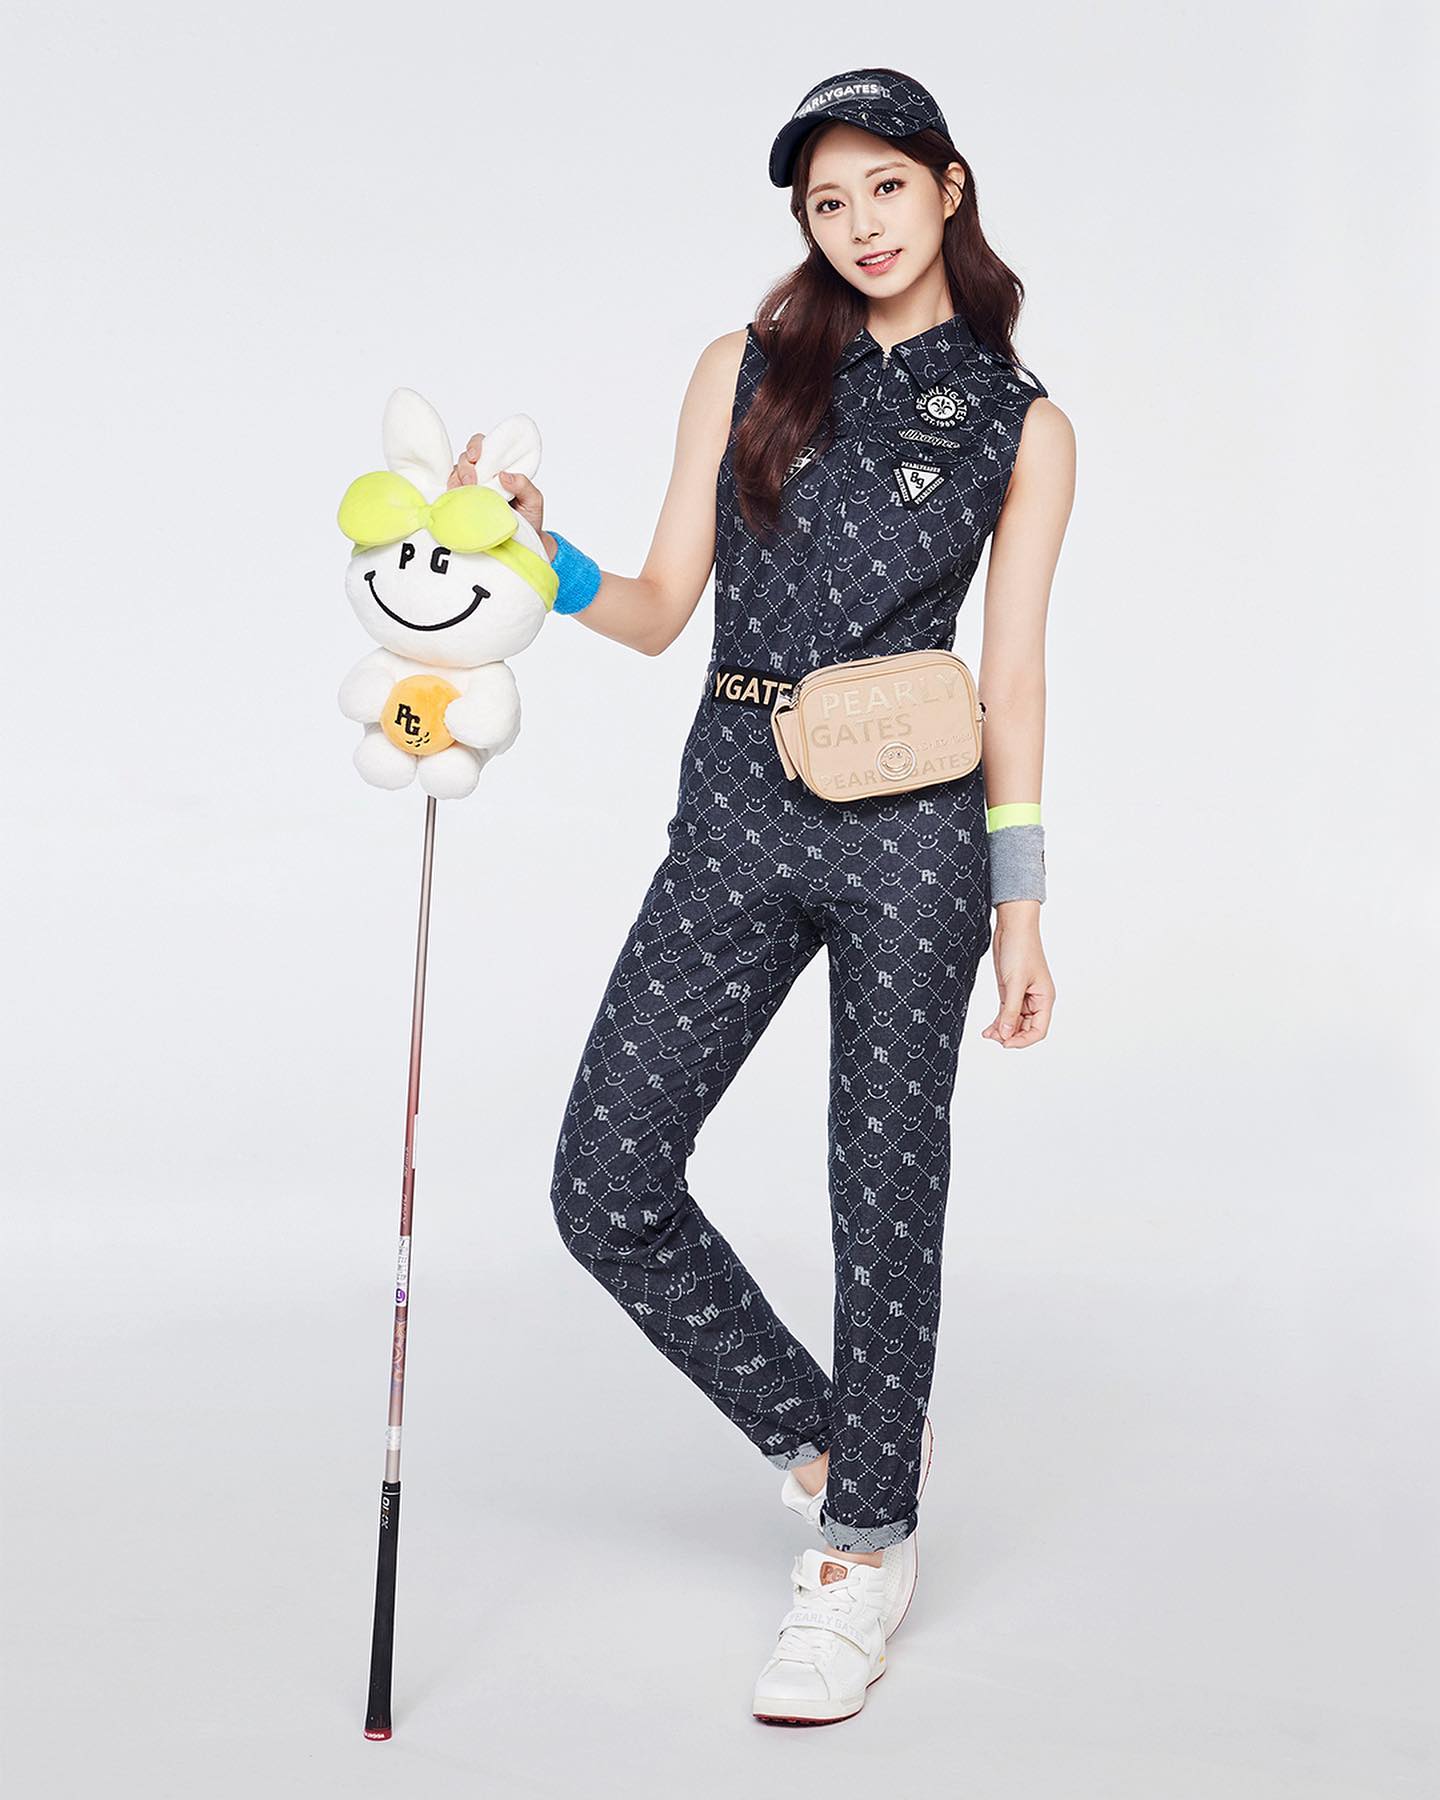 Pearly-Gates-Girl-Golf-Outfit-Tzuyu-2022-Dark-Blue-3.jpg